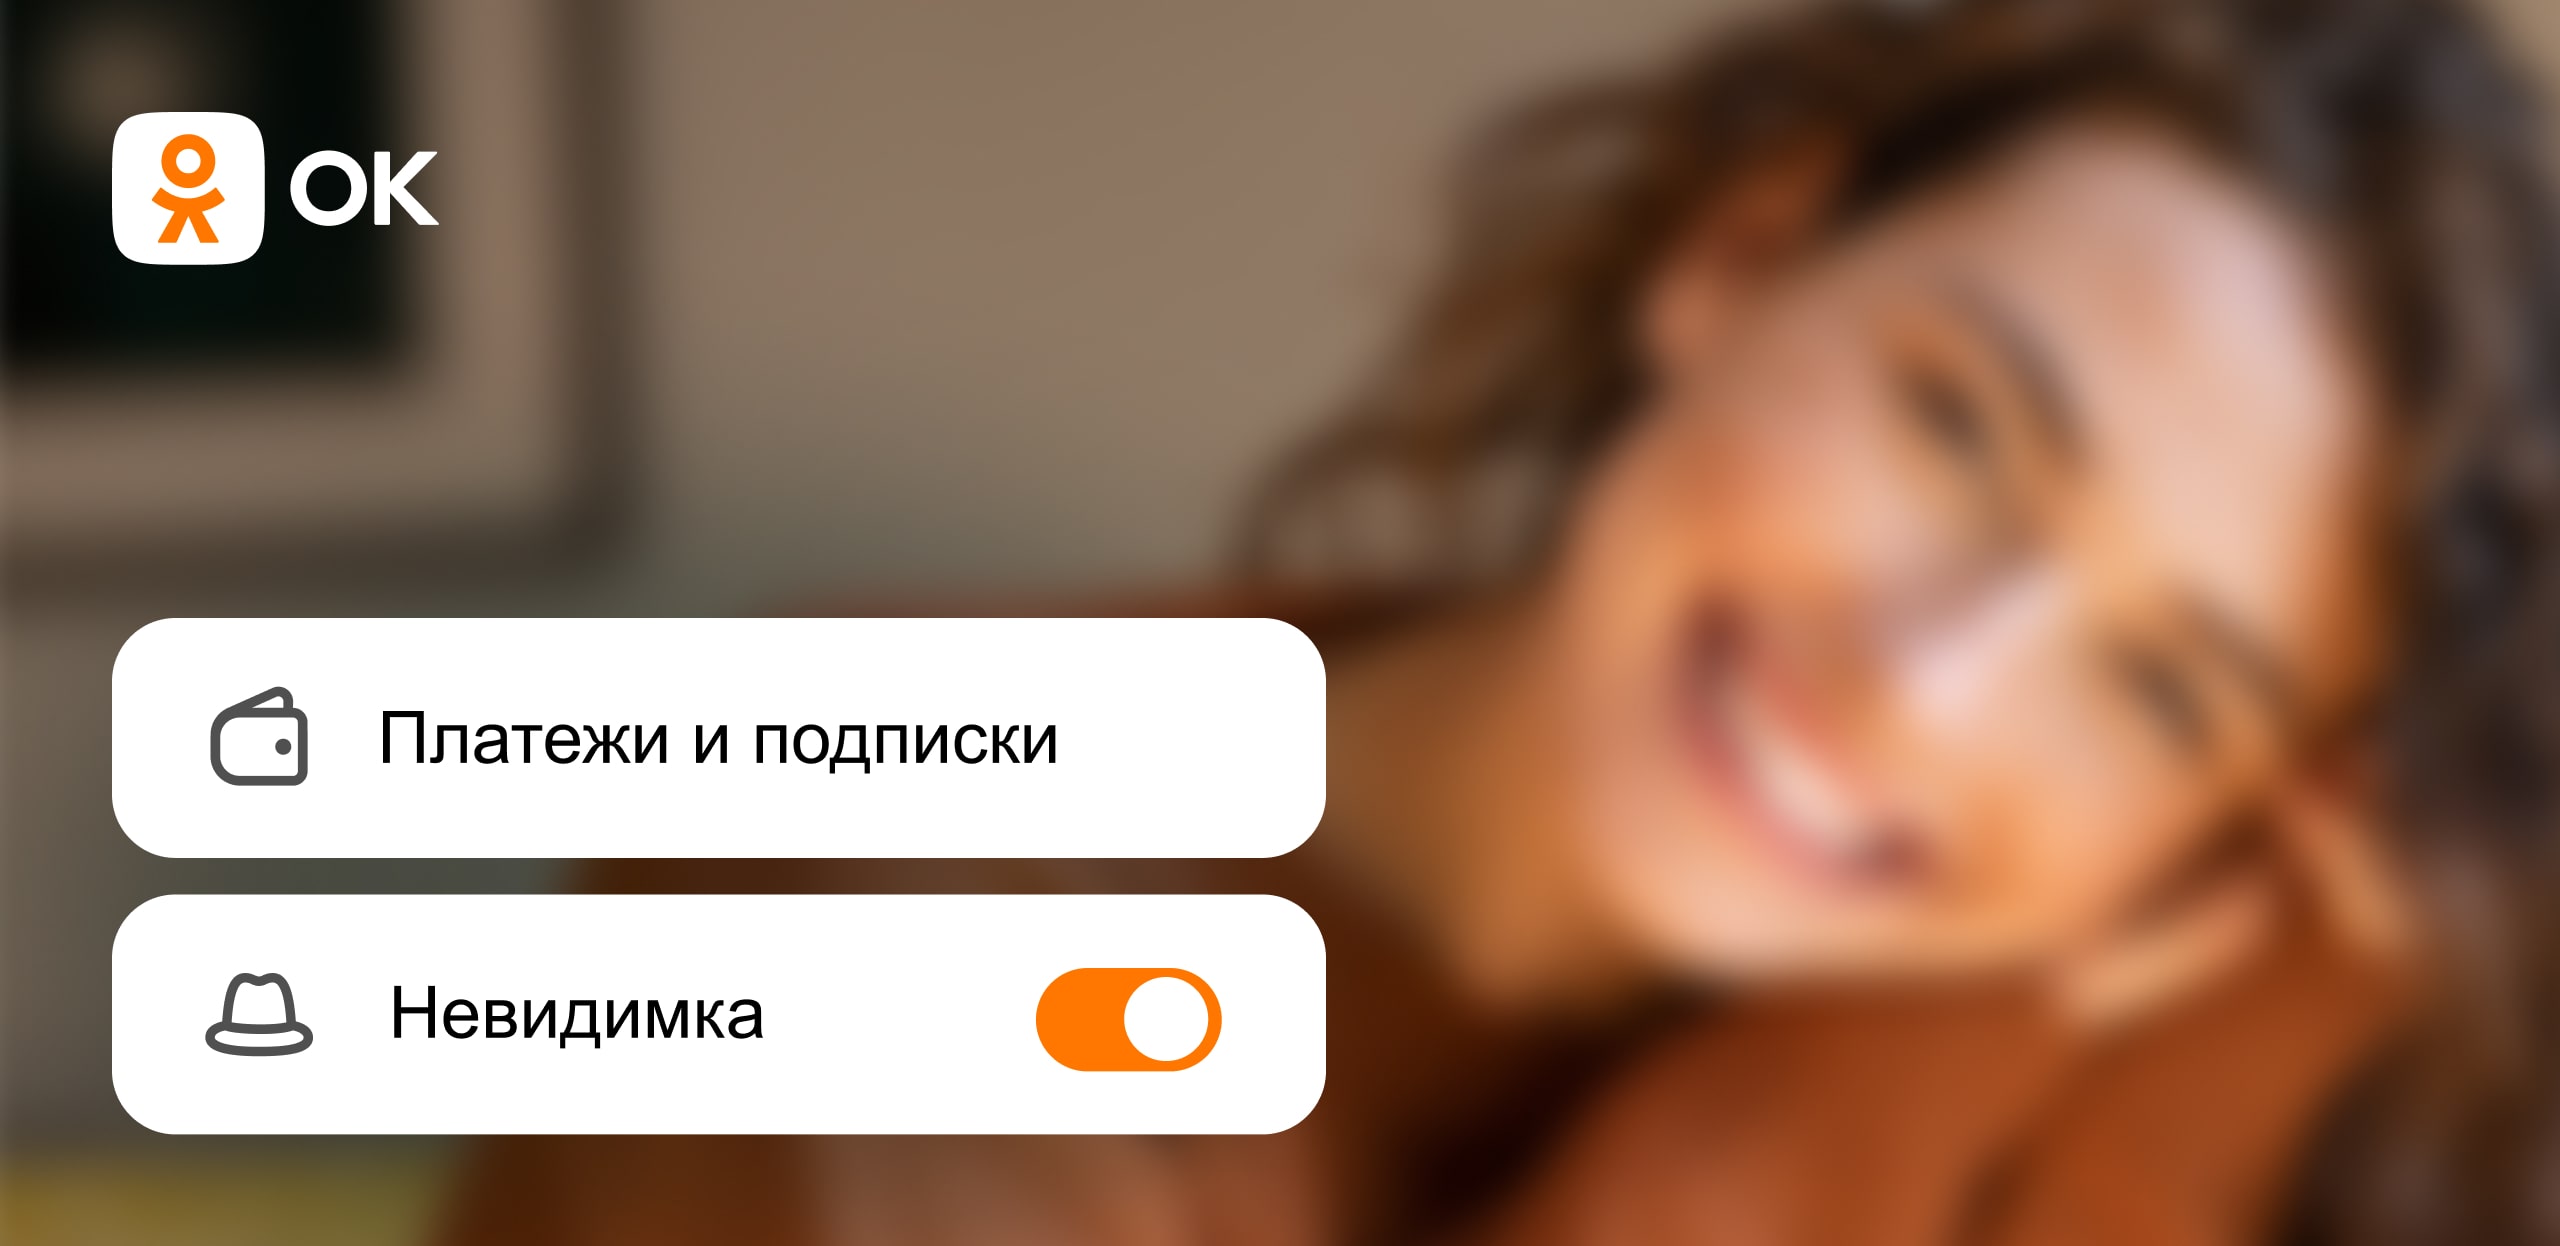 Число подписчиков платных сервисов в Одноклассниках увеличилось в 1,5 раза